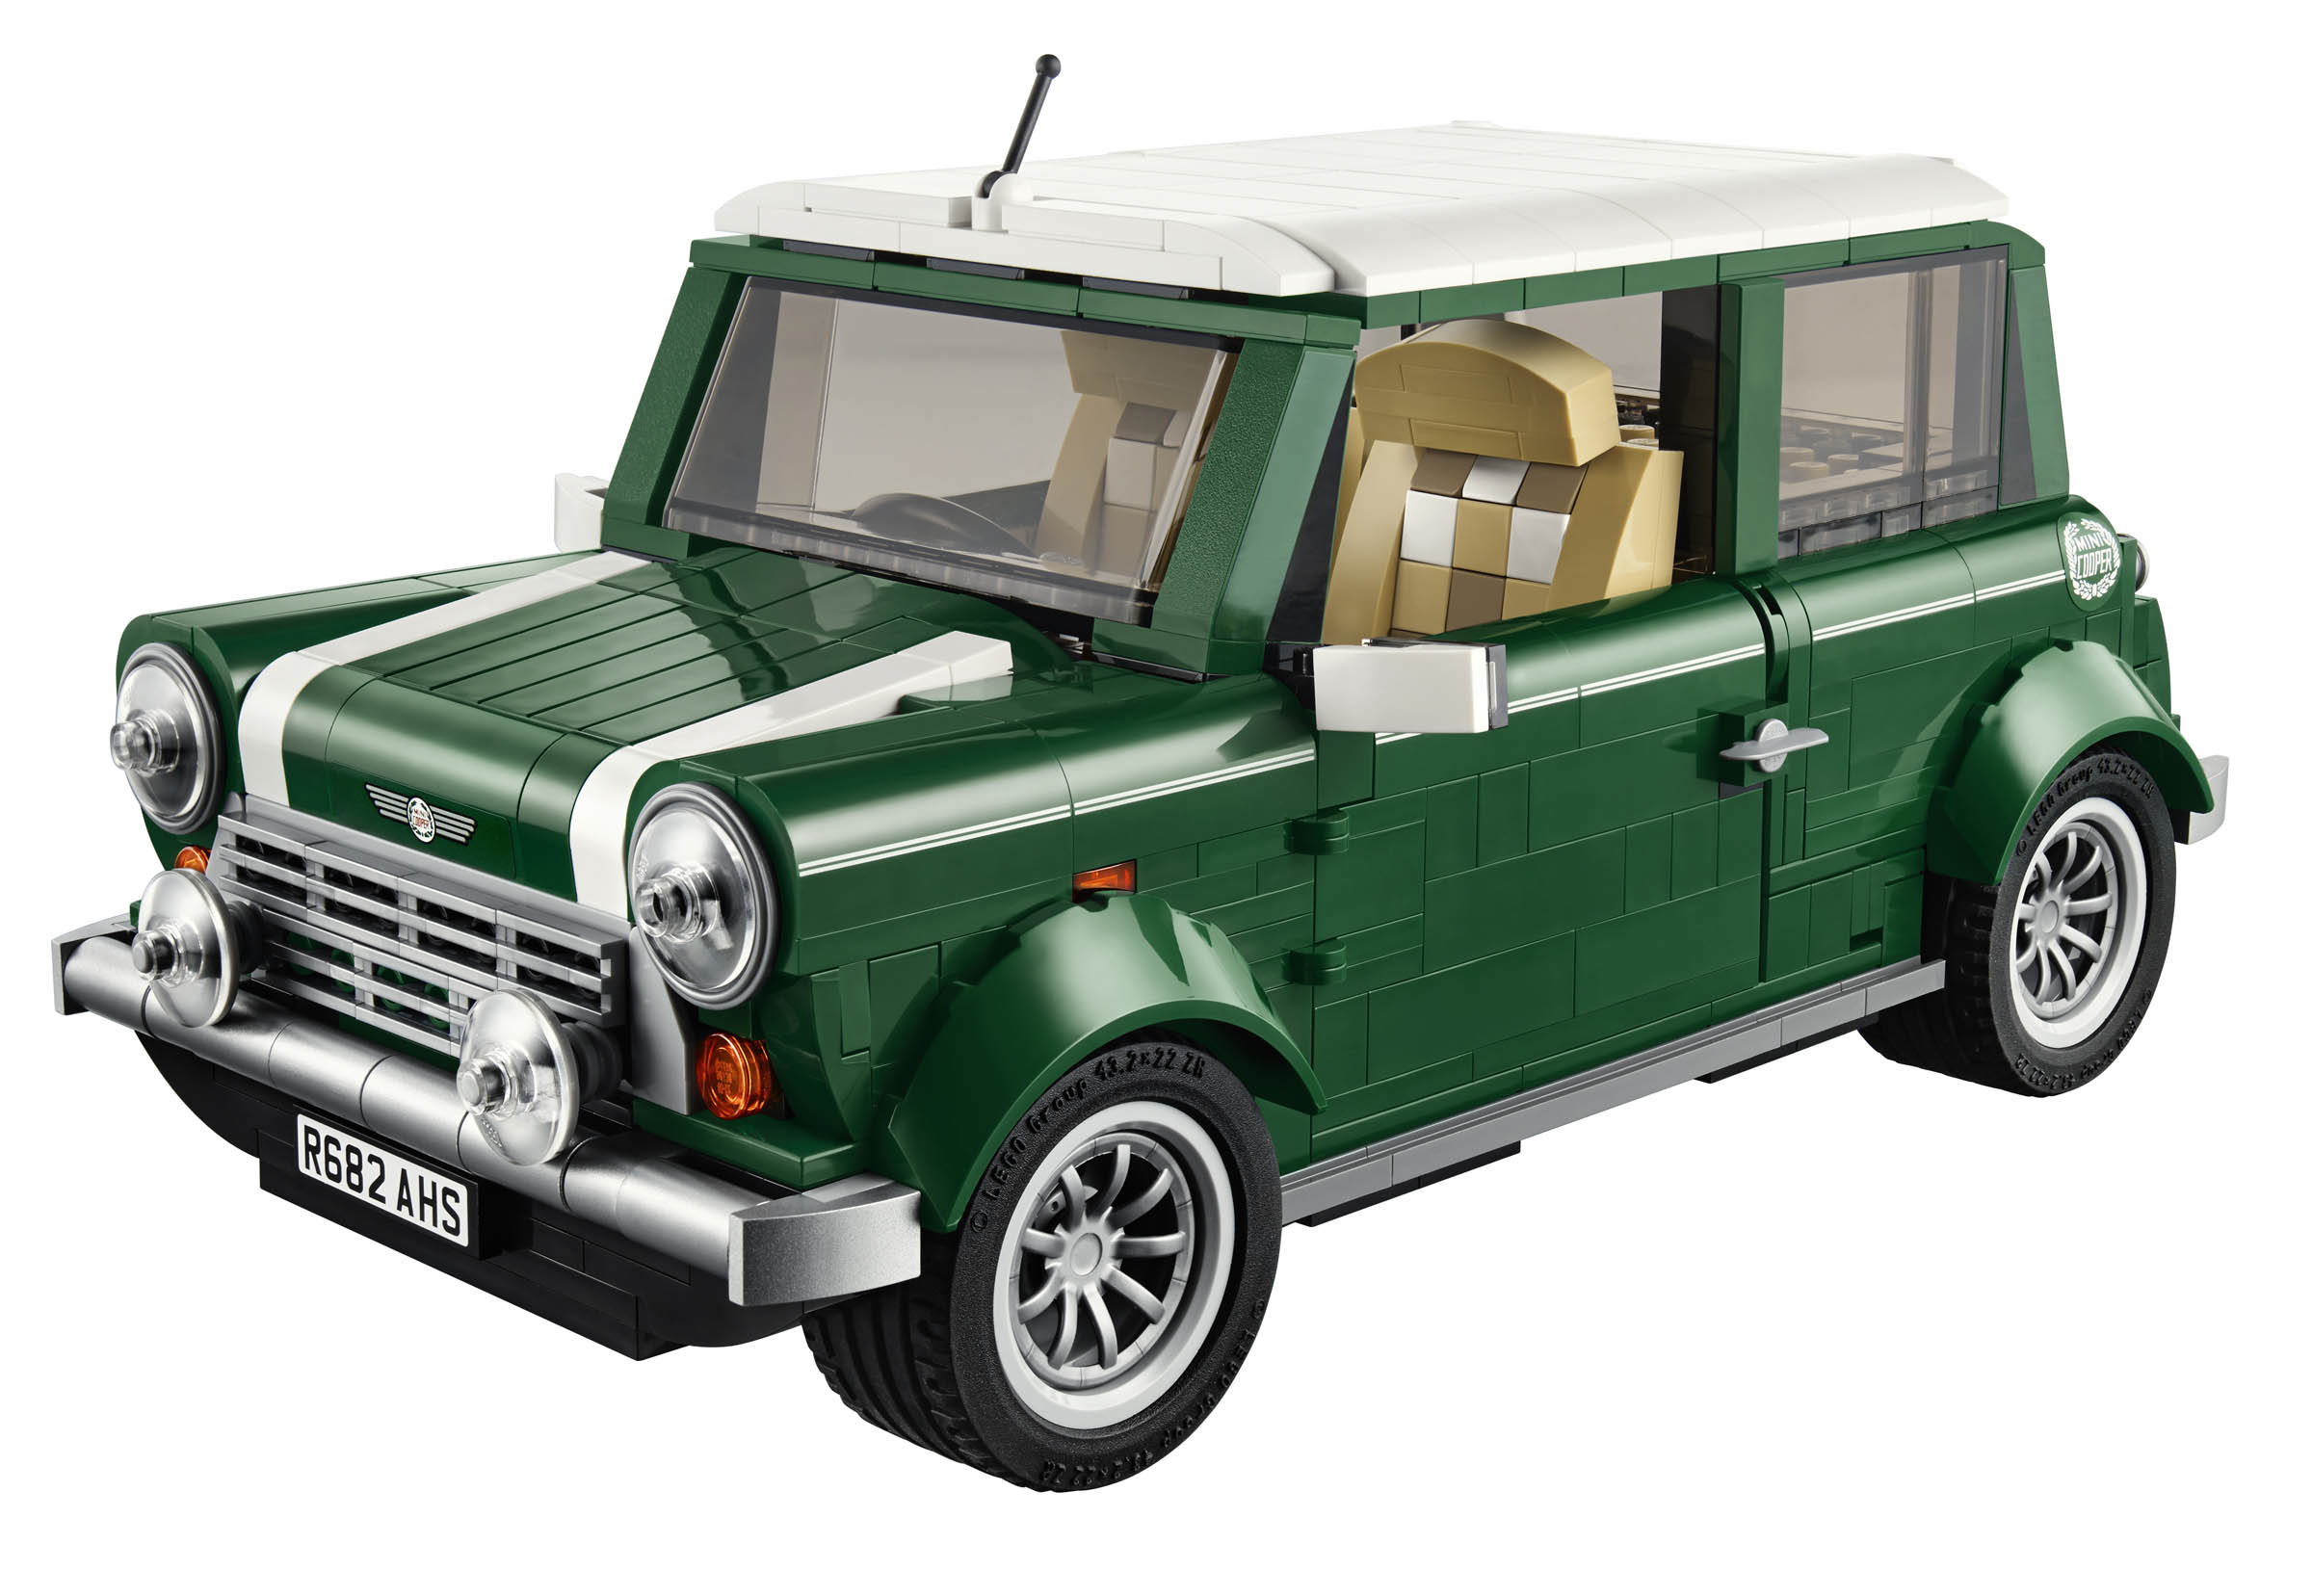 LEGO Announces 10242 MINI Cooper - FBTB